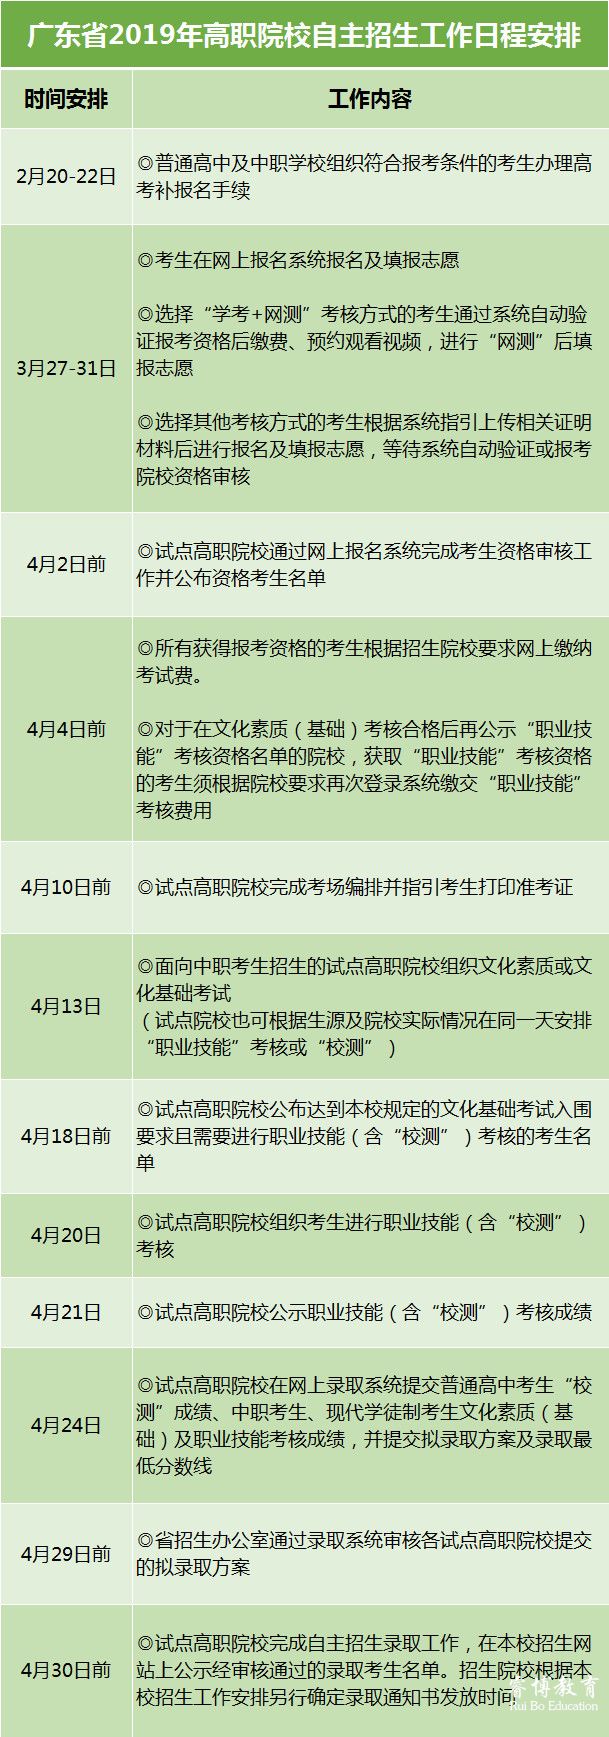 2019年广东省高等职业院校自主招生工作日程安排